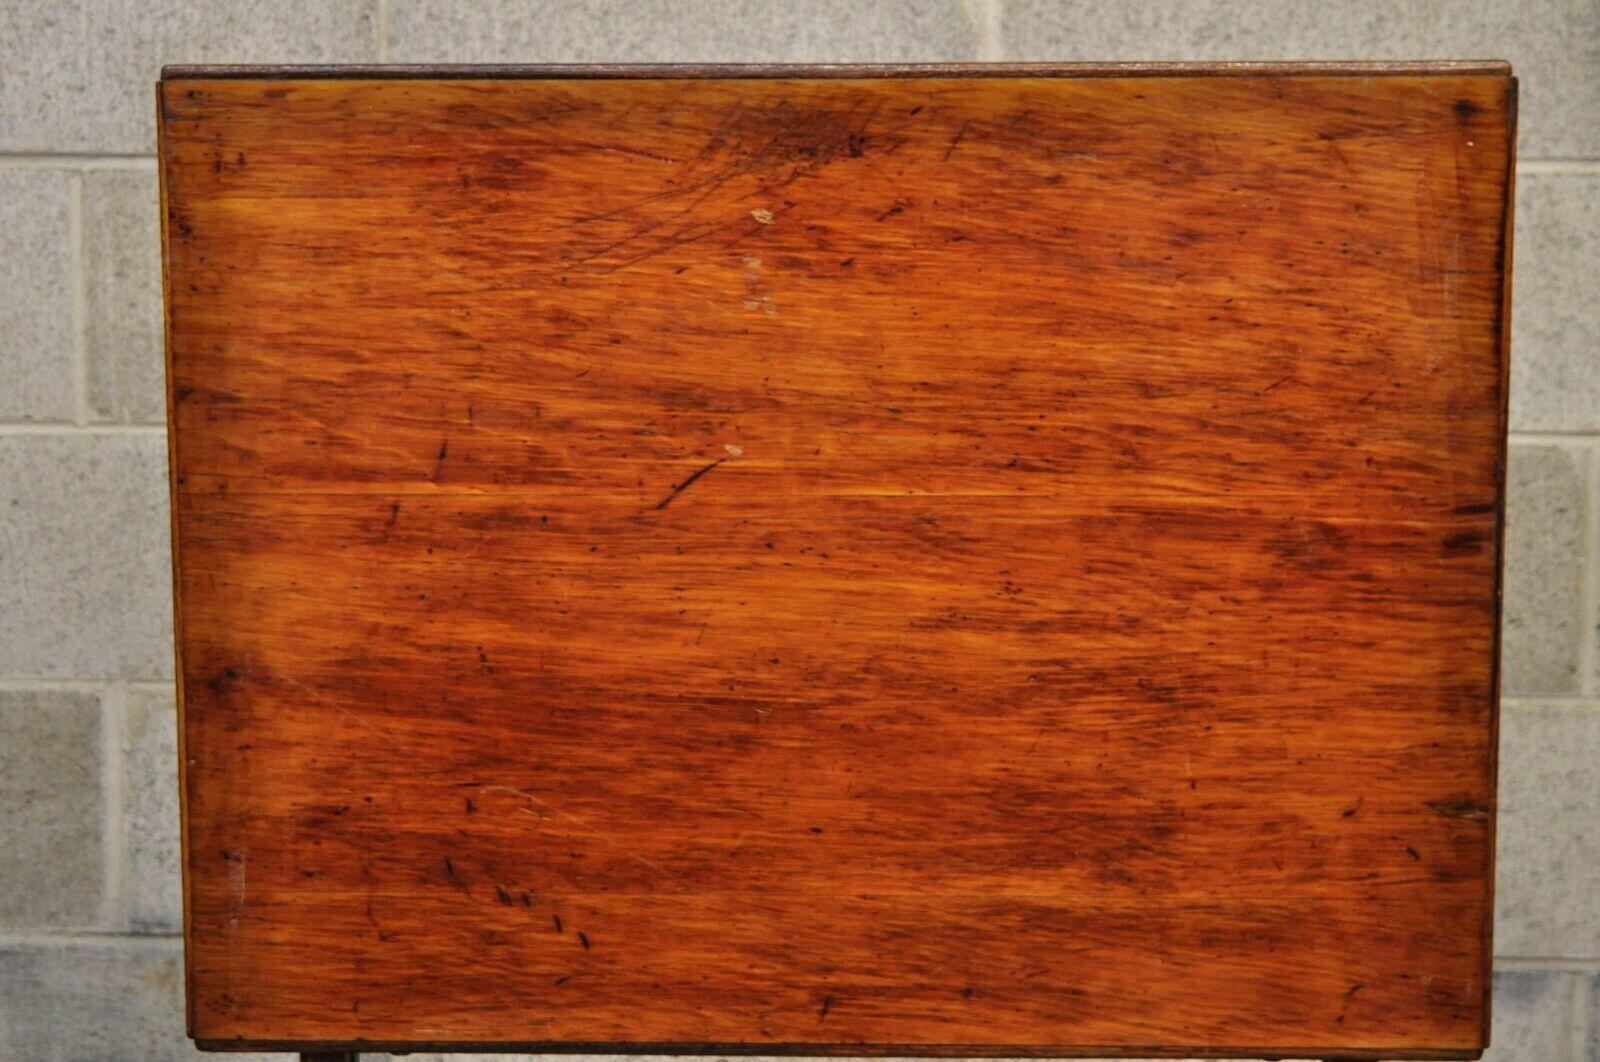 Antique American Industrial Oak Wood Adjustable Artist Drafting Table Work Desk 1